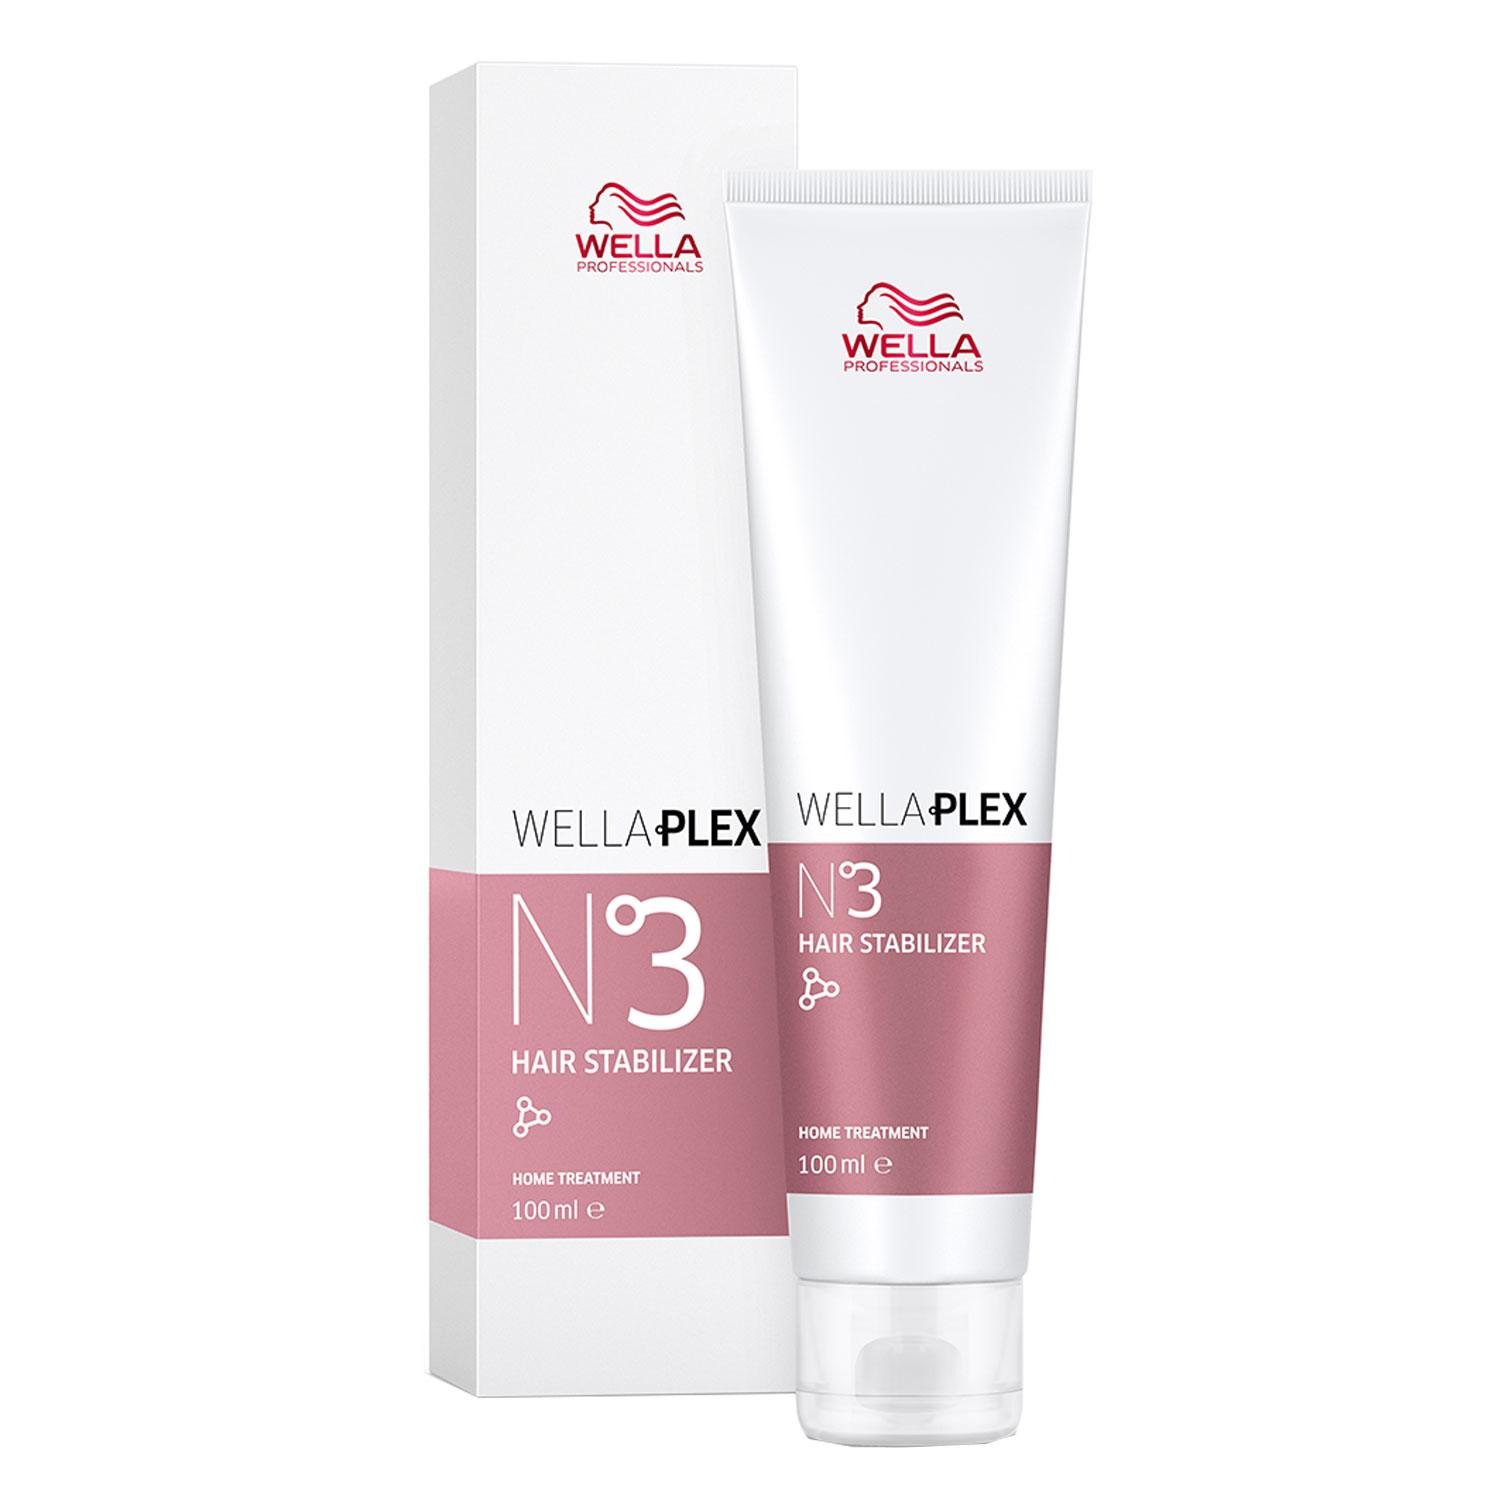 WellaPlex - Hair Stabilizer Nr. 3